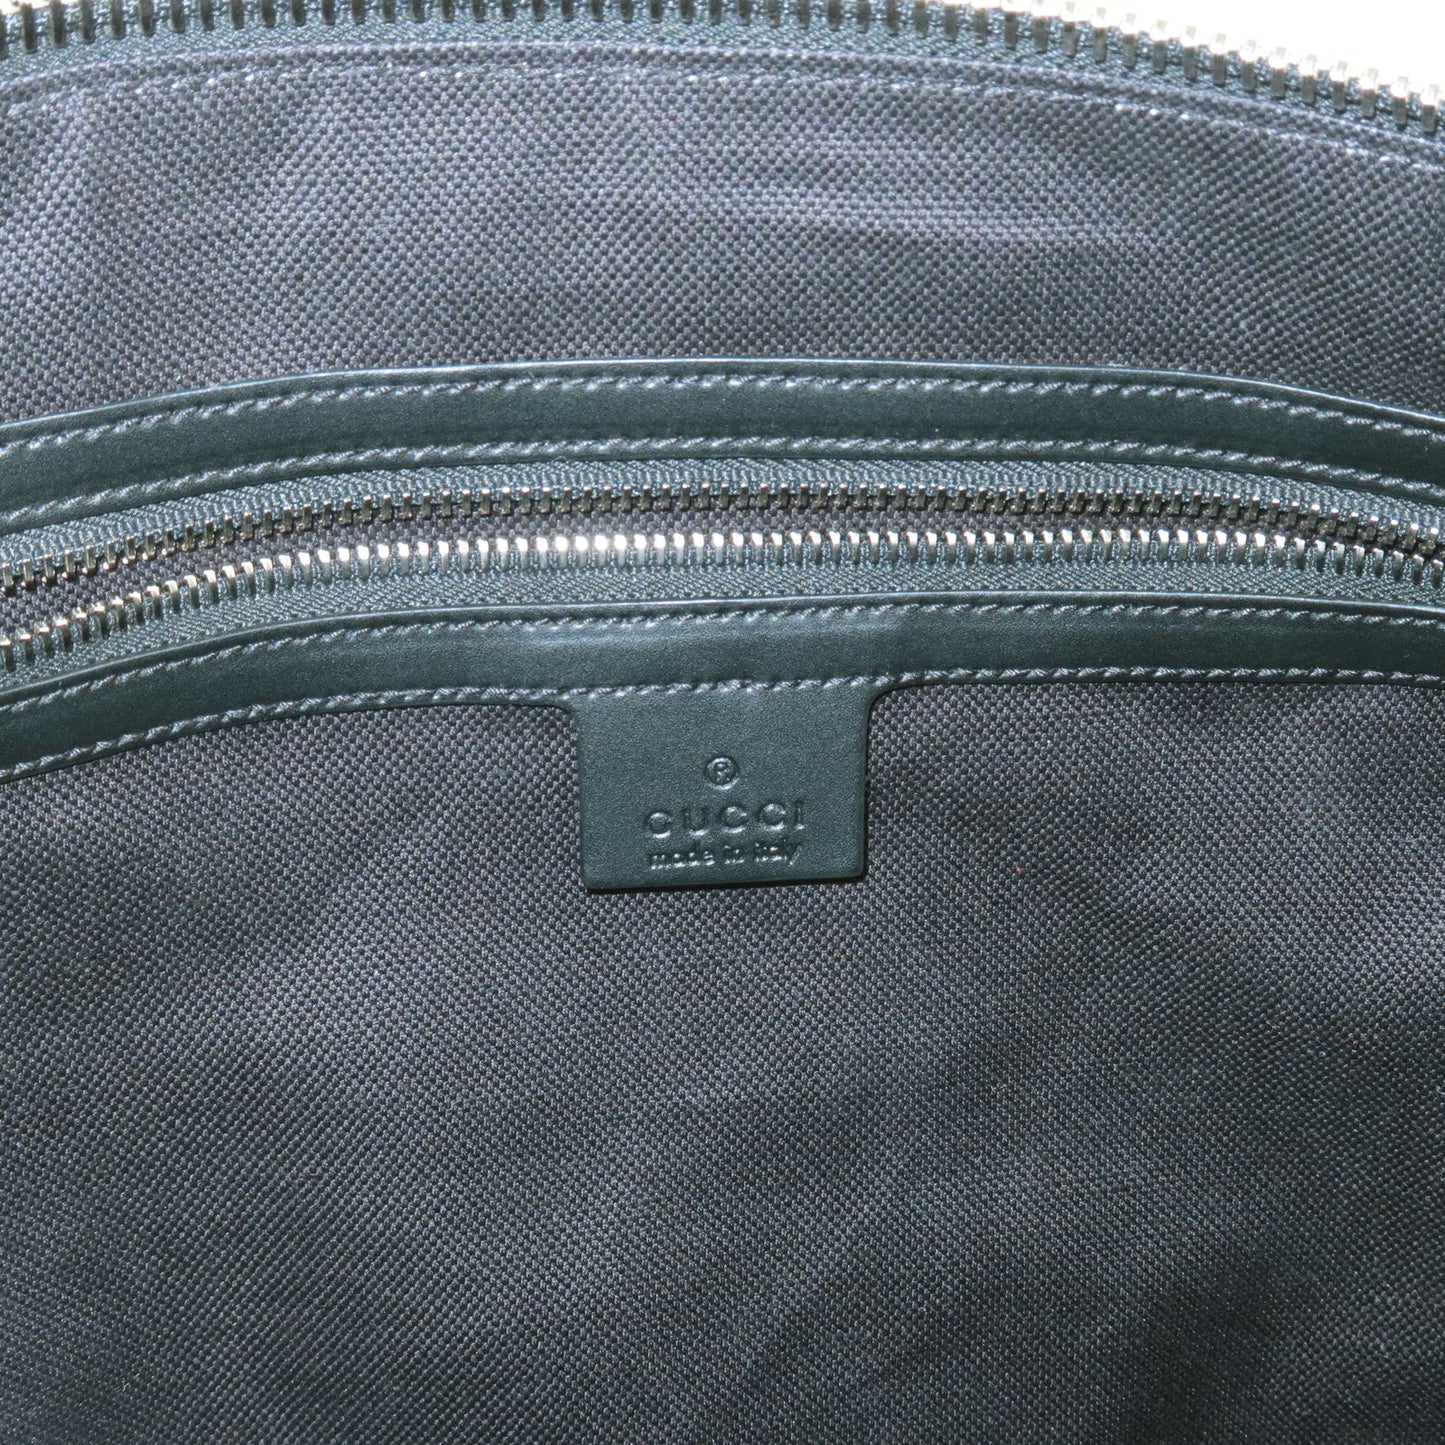 GUCCI GG Supreme Leather Shoulder Bag Gray Black 474139